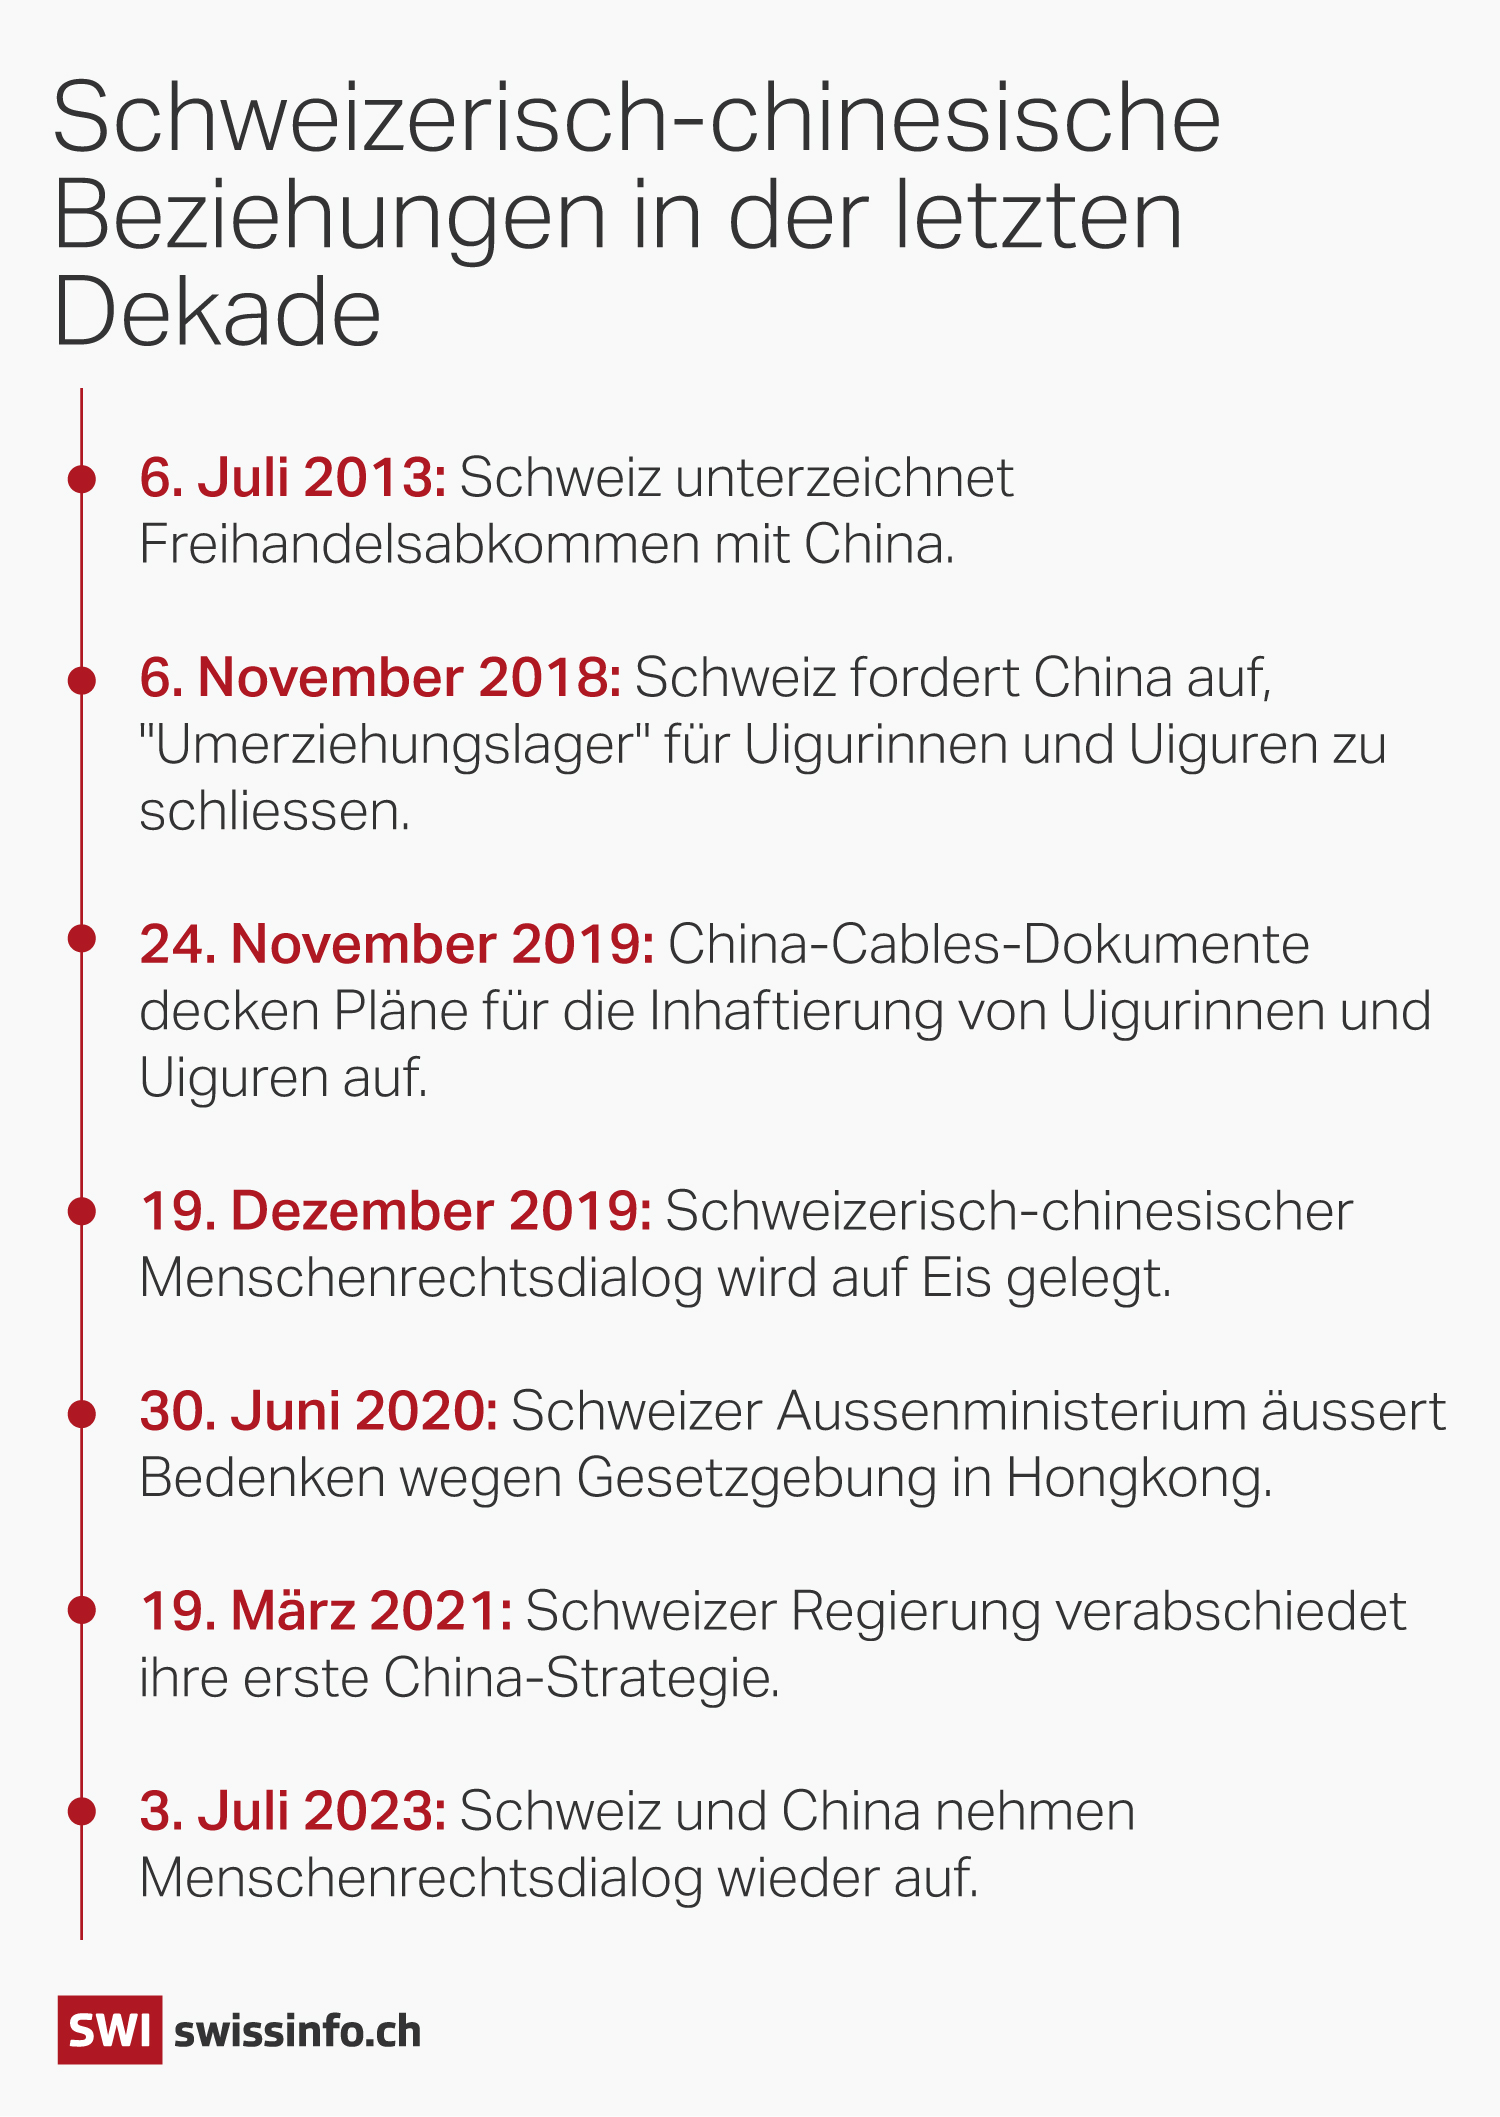 Grafik: Schweizerisch-chinesische Beziehungen in der letzten Dekade